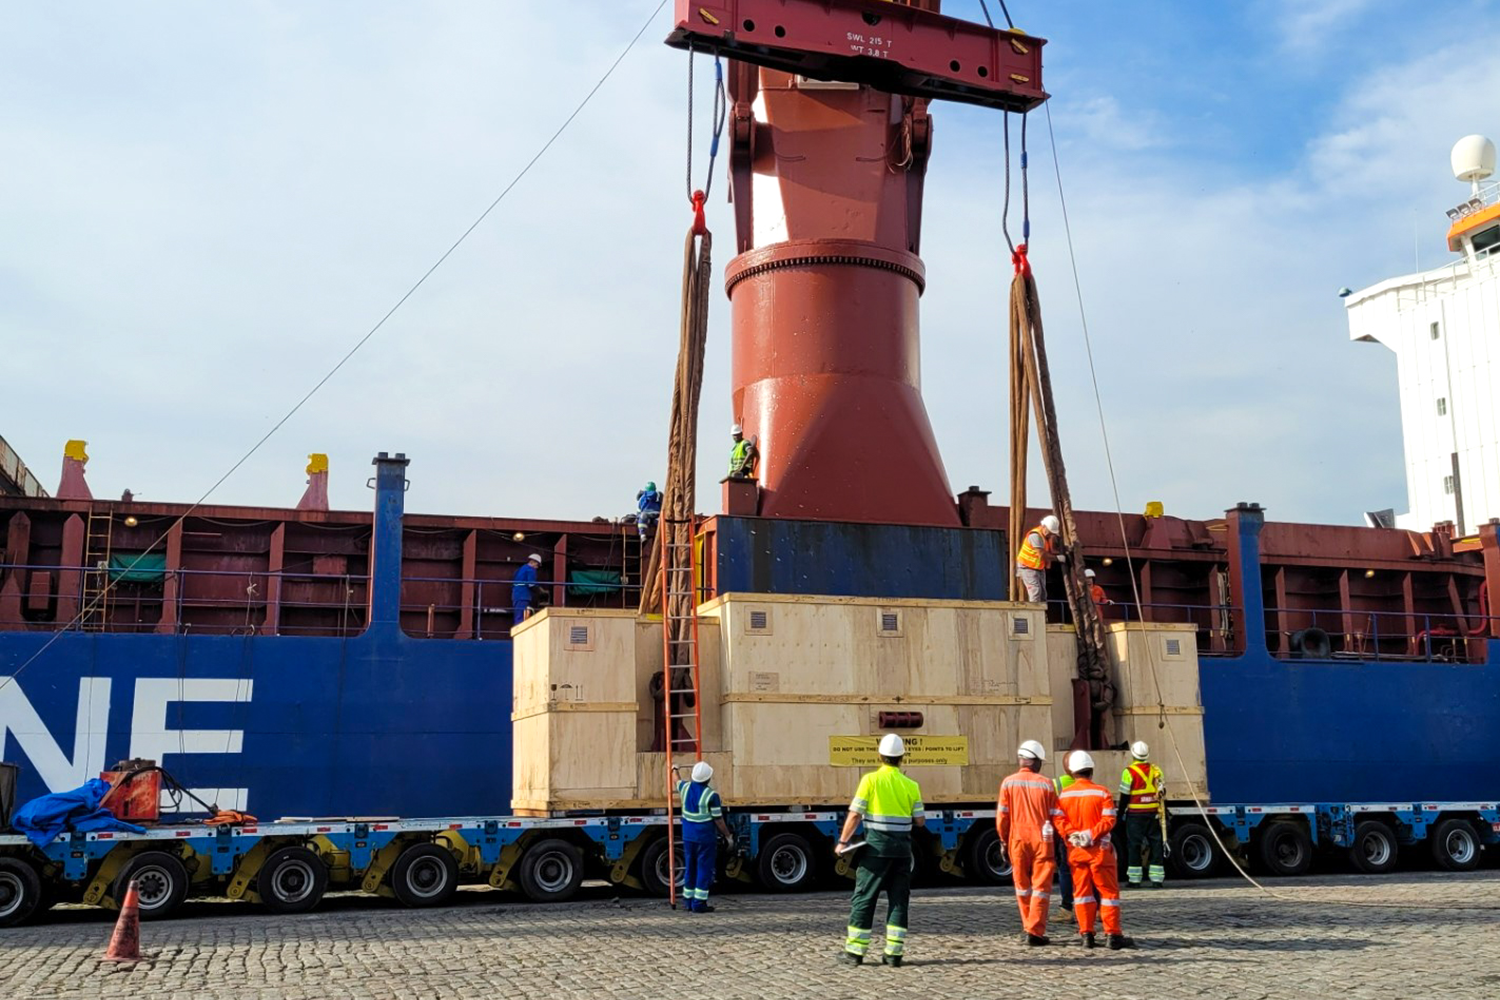 Trabajadores portuarios en torno a un cargamento gigante sujetado por una grúa